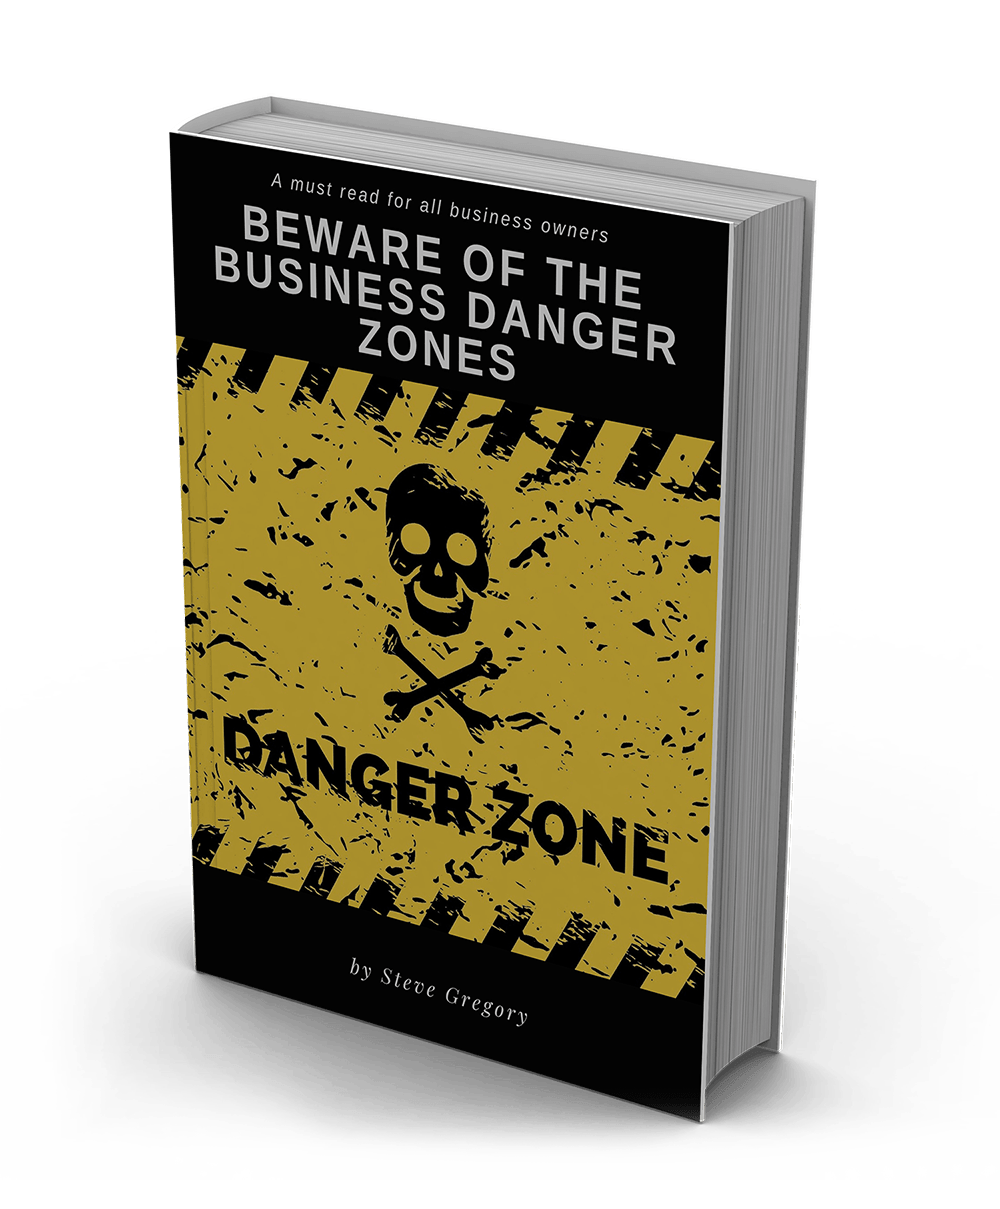 Beware of the business danger zones